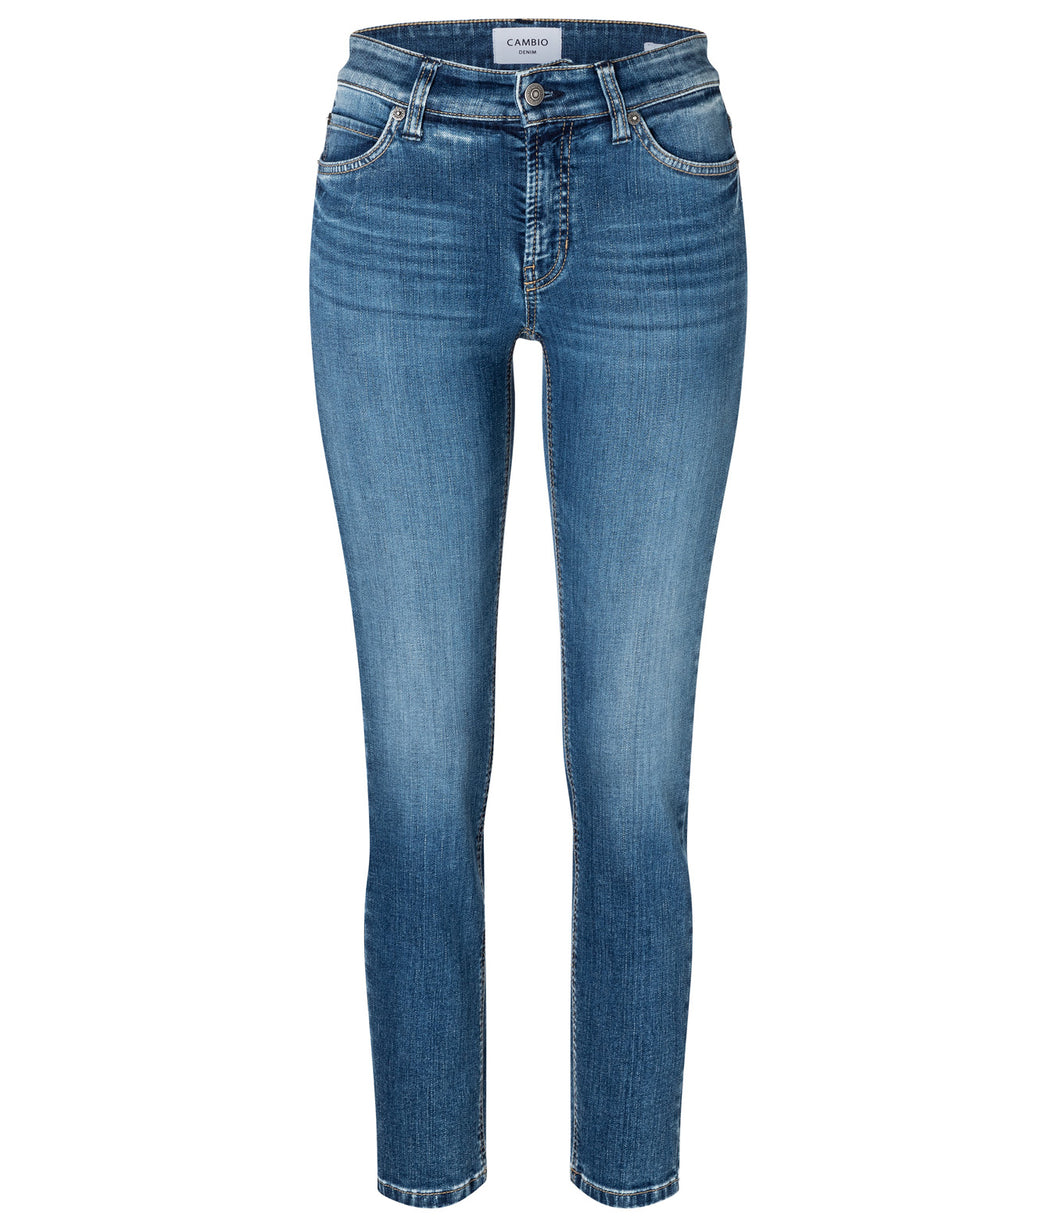 Spotlijster tong Top Cambio Jeans Paris Blue Denim – Cashmere Fashion